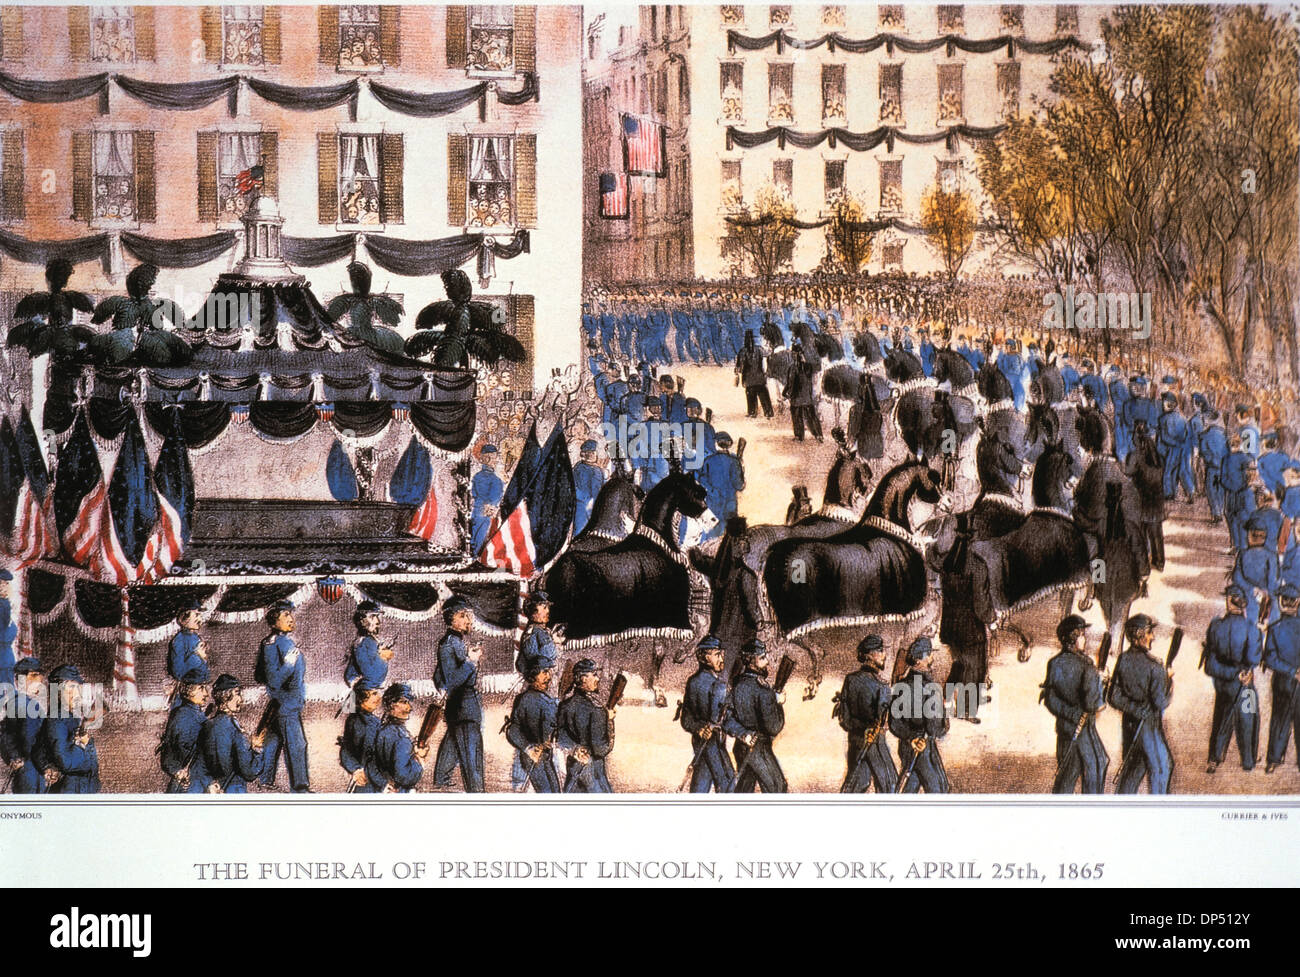 Die Beerdigung von Präsident Lincoln, New York, 25. April 1865, Lithographie, Currier & Ives, 1865 Stockfoto